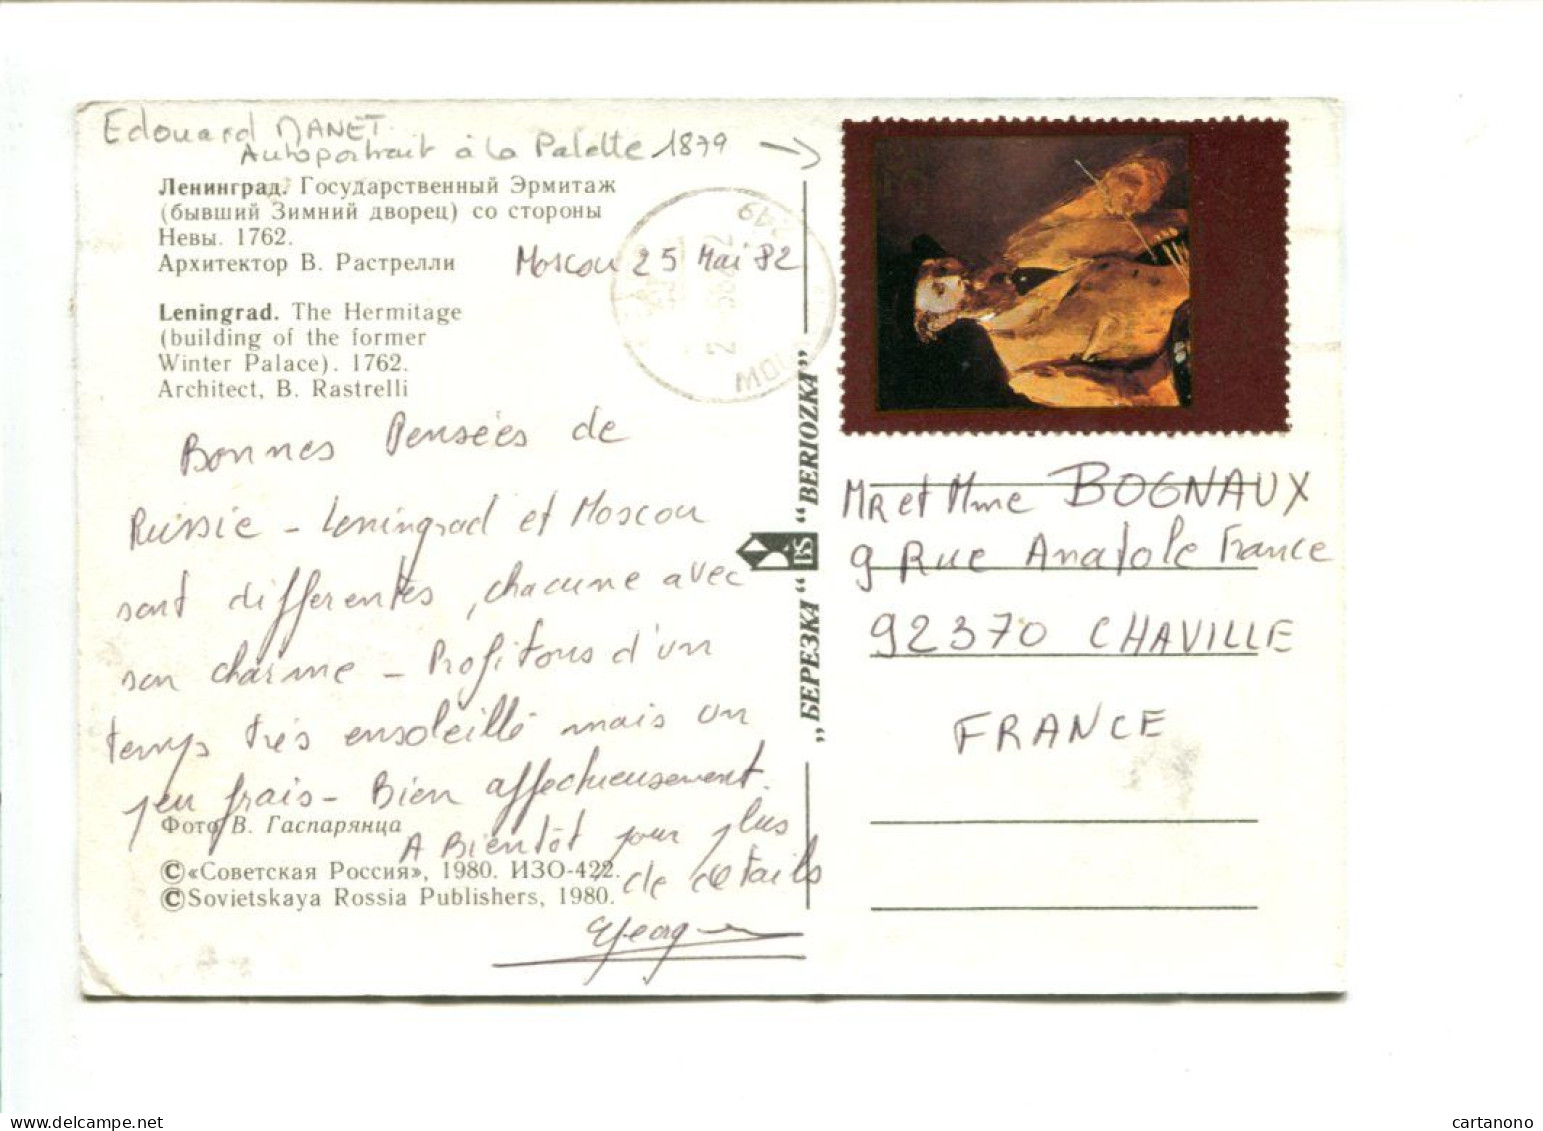 URSS - Affranchissement Sur Carte Postale Du Musée De L'Hermitage - Autoportrait D'Edouard MANET - Impressionismus